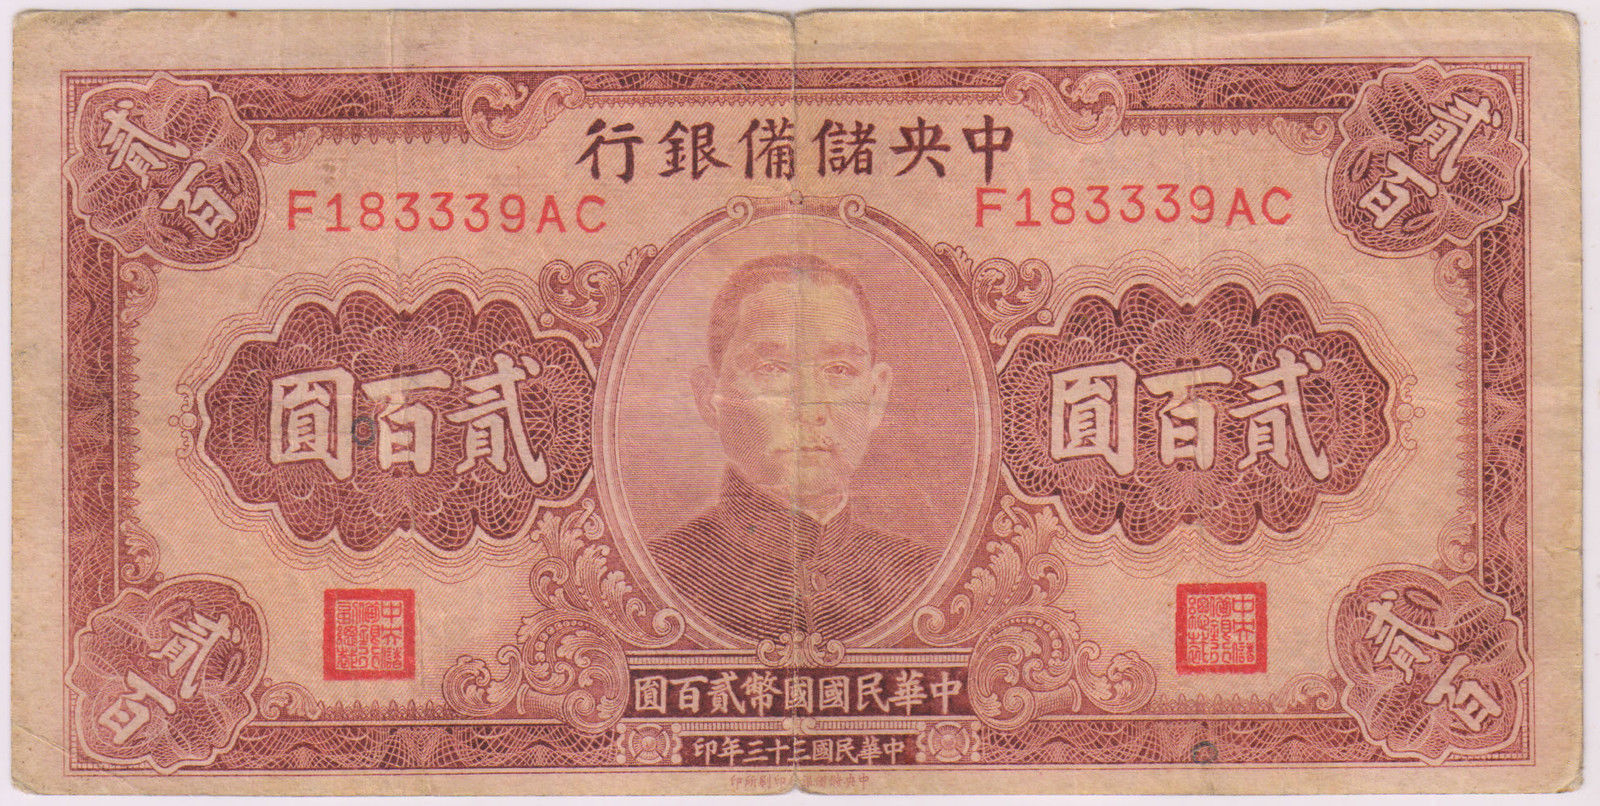 200 тысяч юаней. Бумажные деньги Китая. Старые китайские купюры. Древние китайские бумажные деньги. 200 Банкнота Китай.